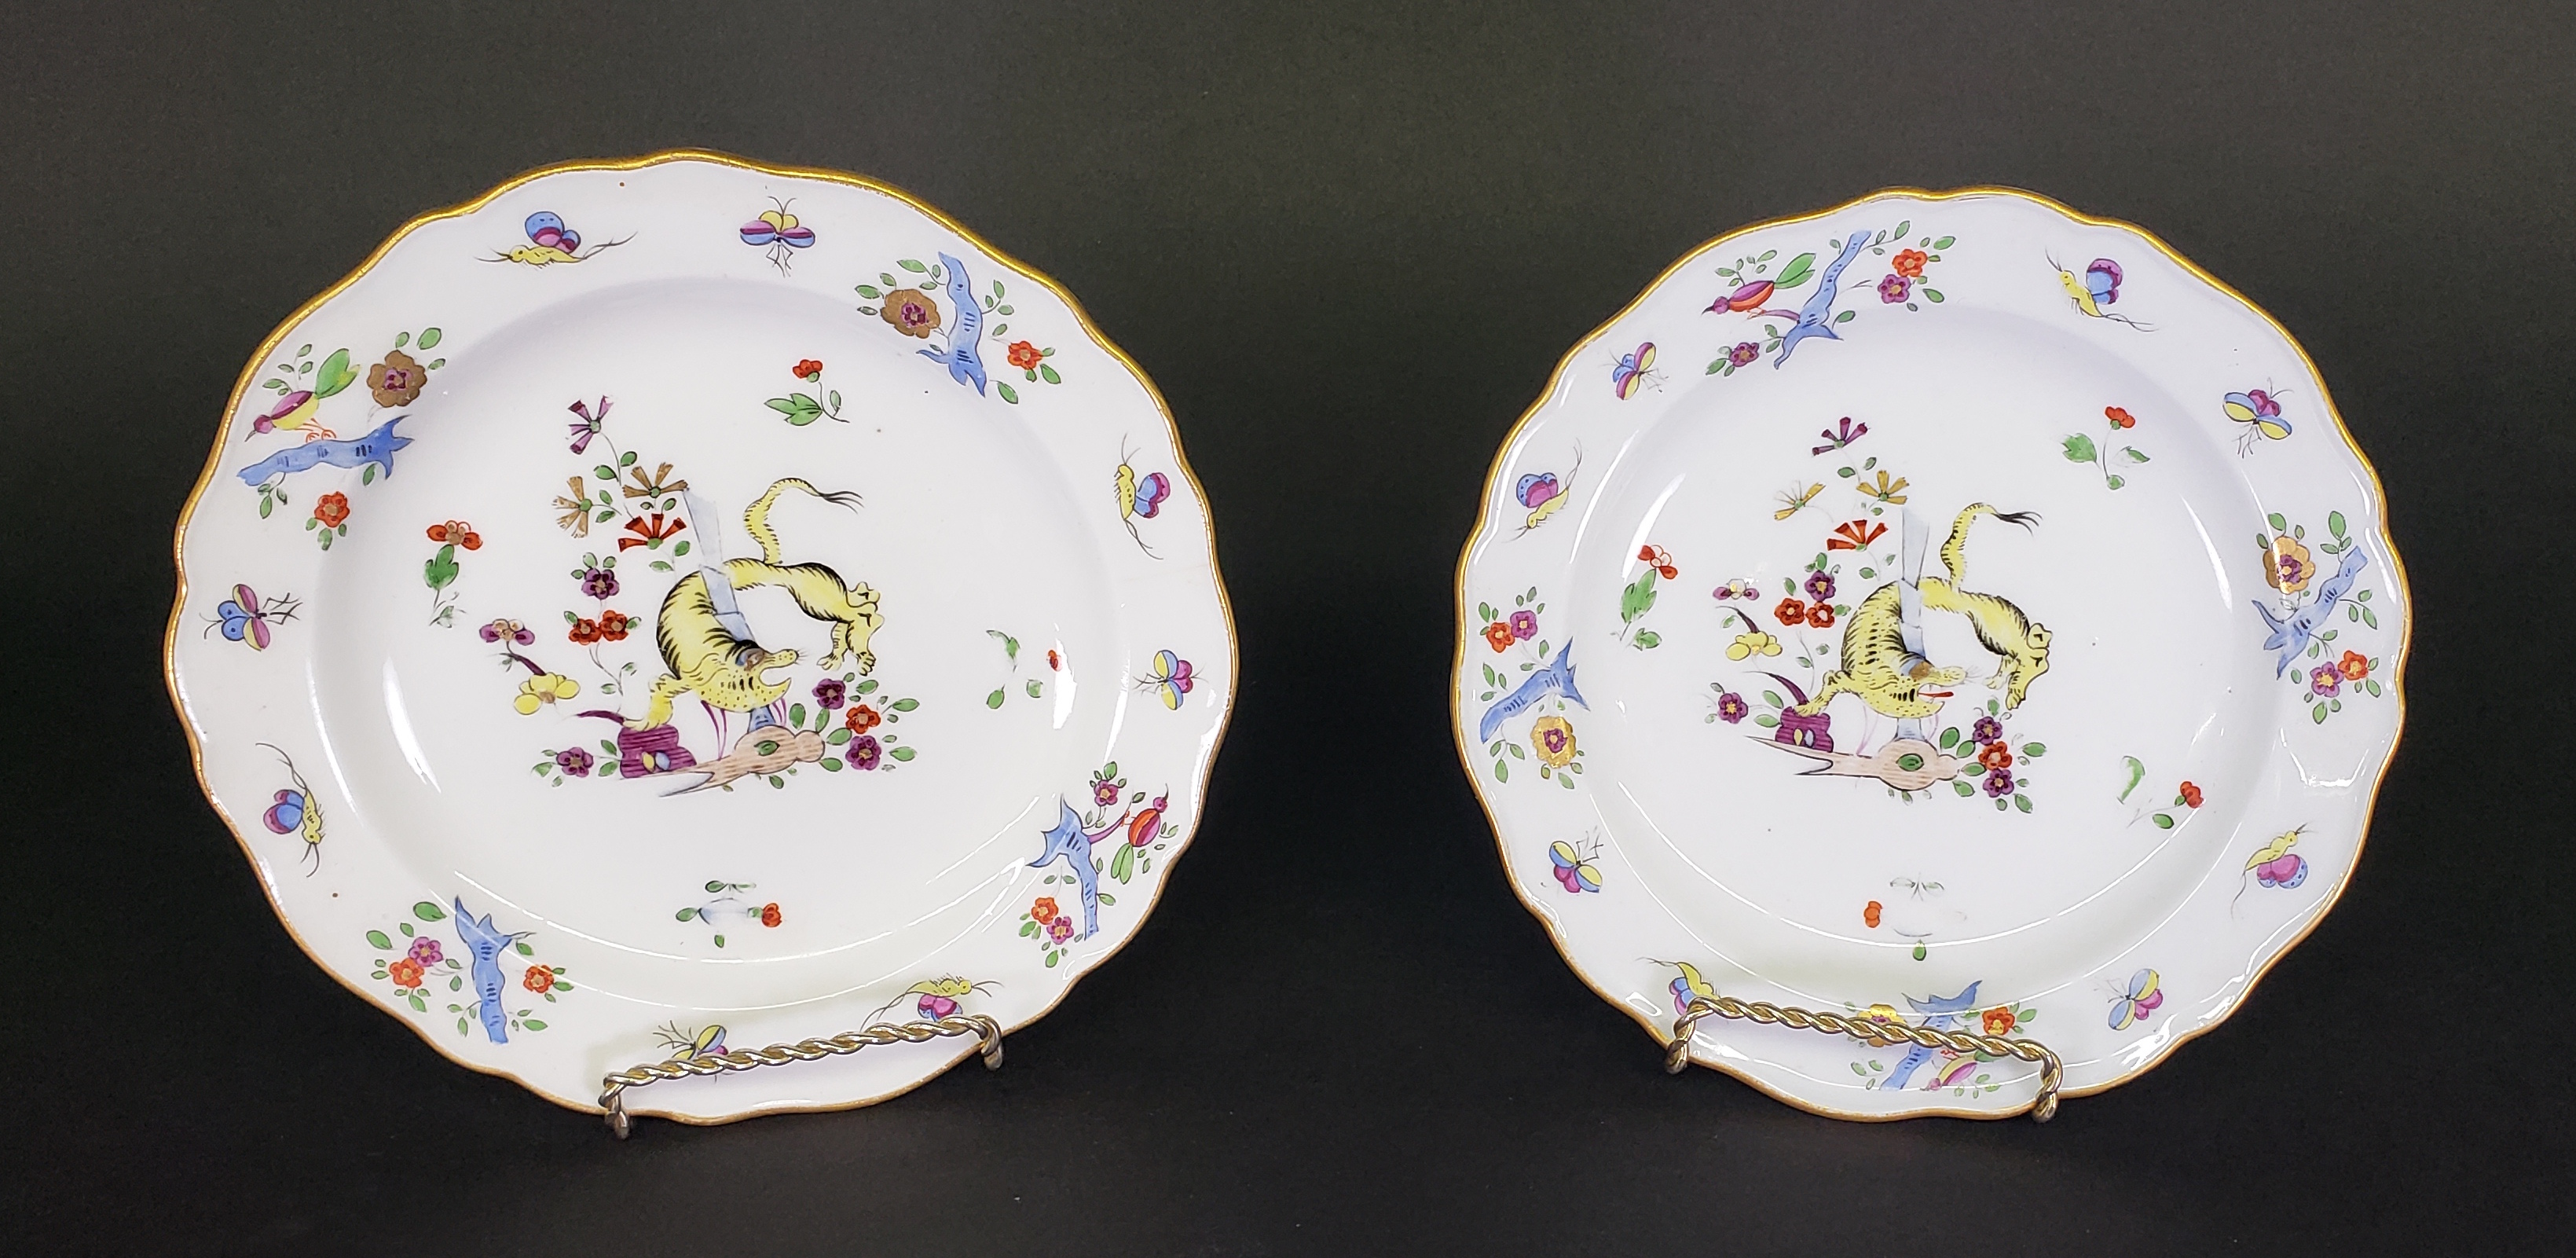 3316-955 Meissen Porcelain Plates A